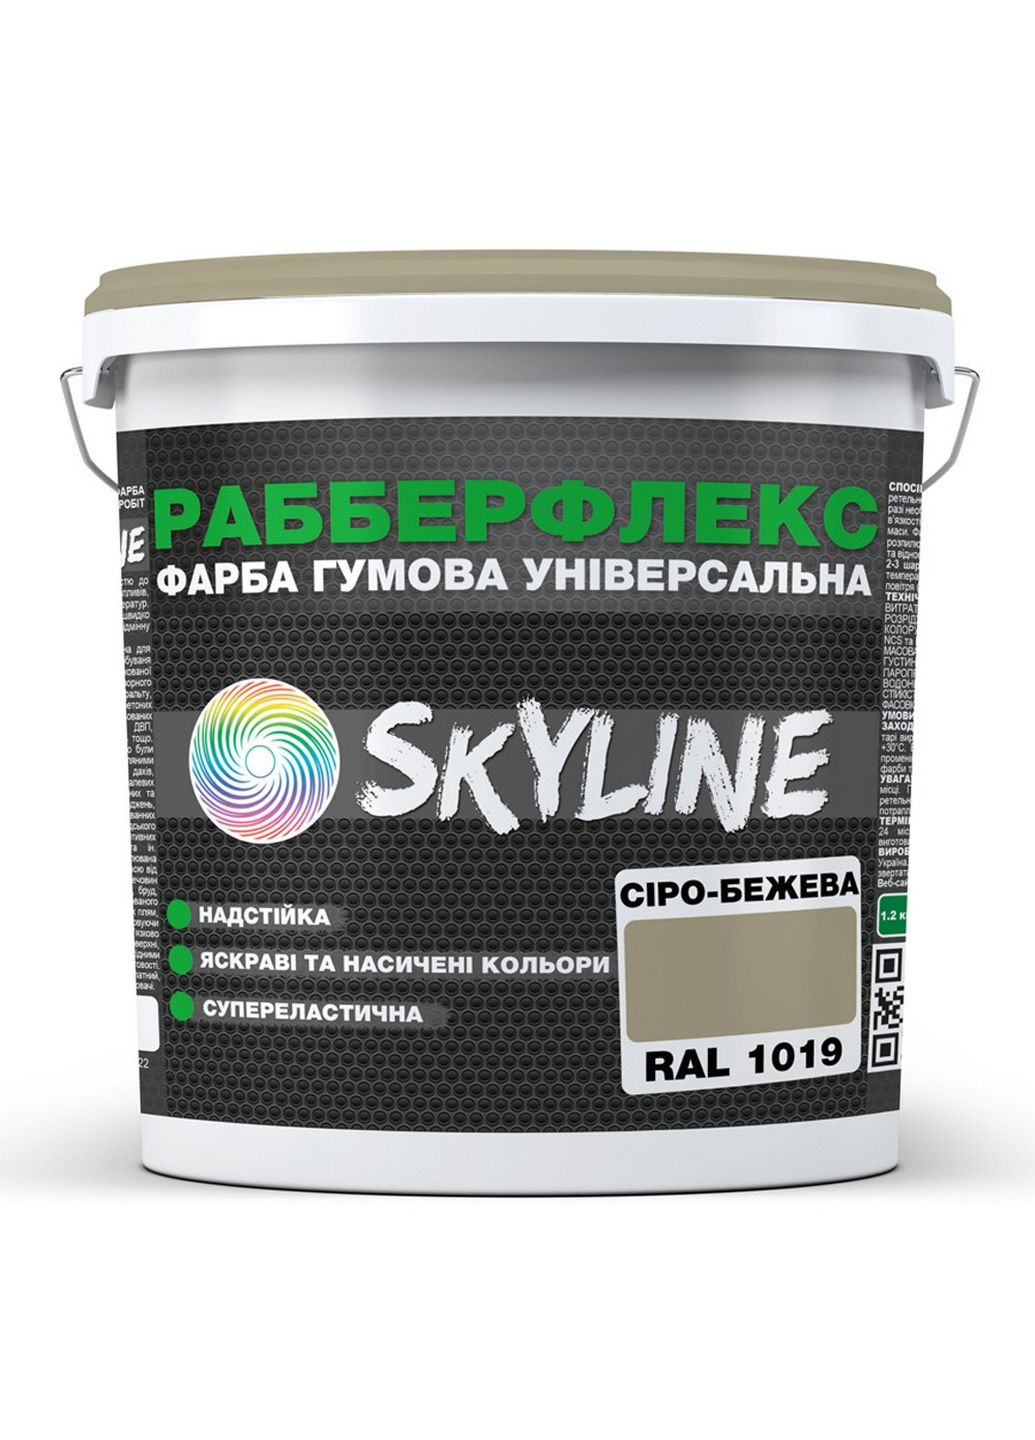 Сверхстойкая краска резиновая суперэластичная «РабберФлекс» 12 кг SkyLine (283326677)